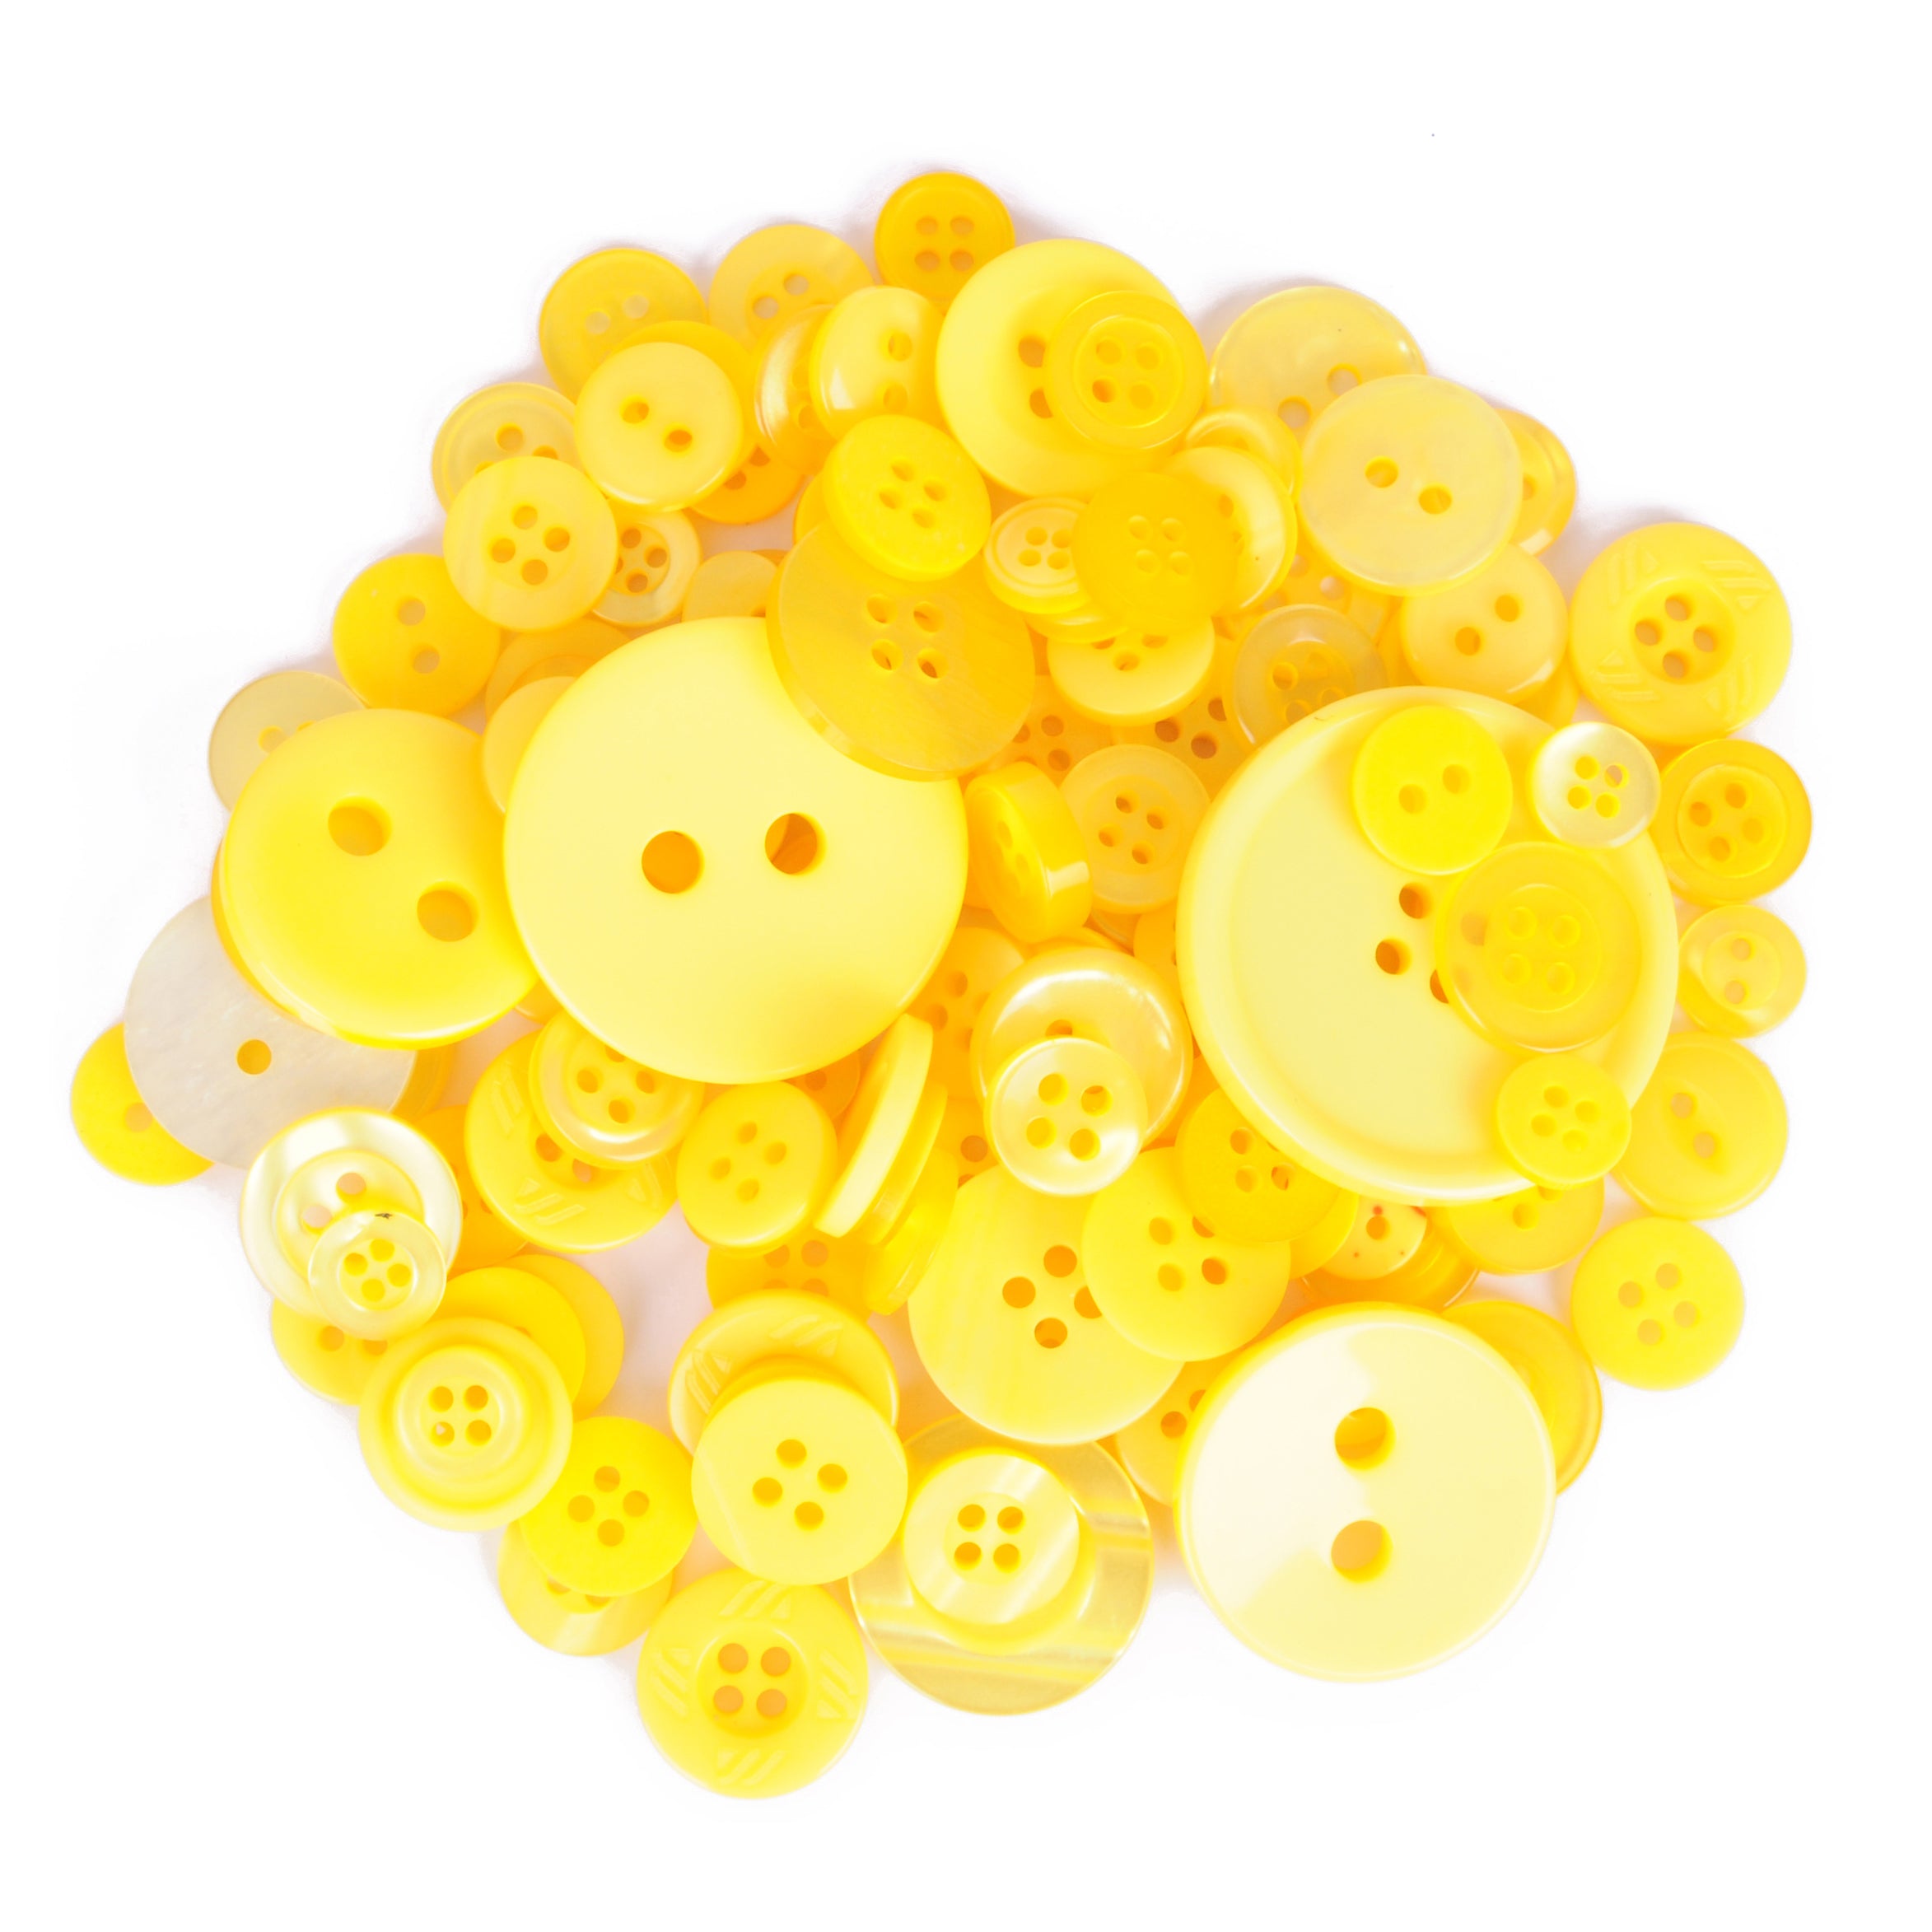 Golden Yellow Bulk Buttons